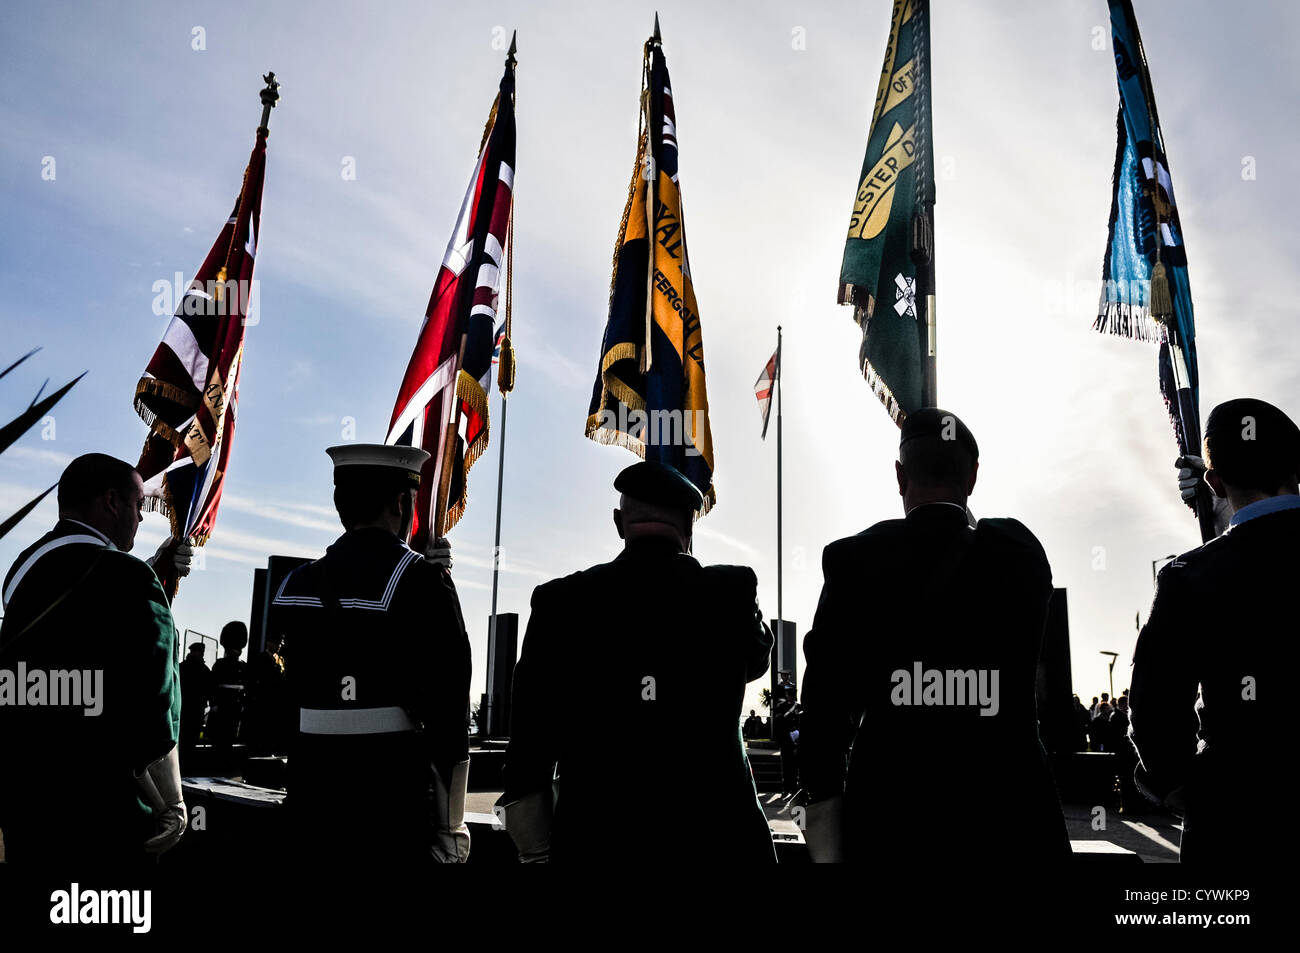 Dimanche 11 novembre 2012, Carrickfergus (Irlande du Nord). Les membres de la Royal British Legion, au service des forces armées, et ex-soldats prendre part en souvenir du dimanche. Alamy Live News Banque D'Images